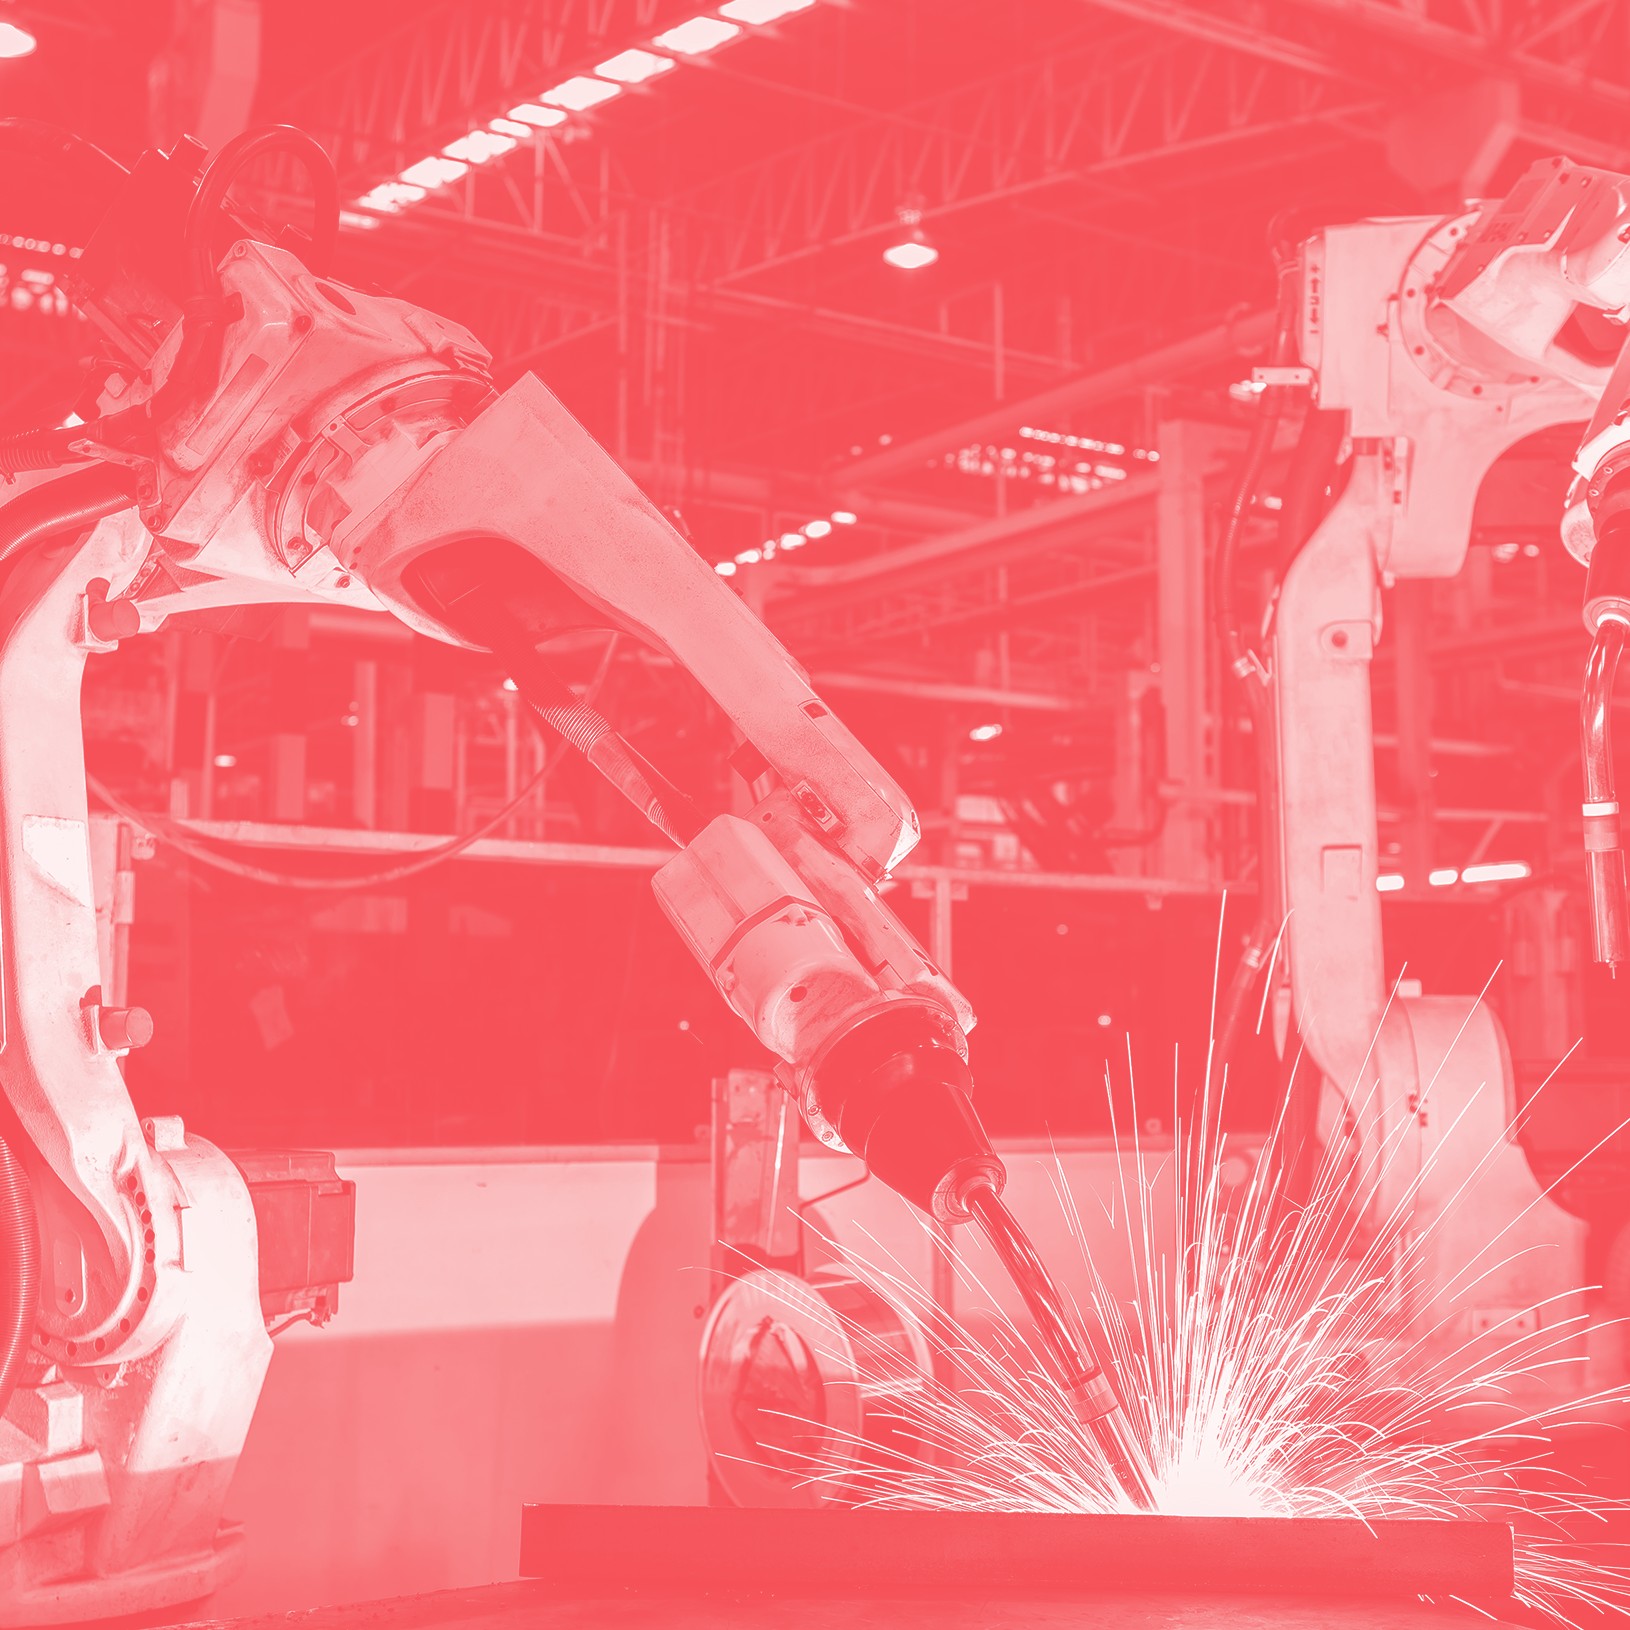 generation robotics: going beyond factory floor